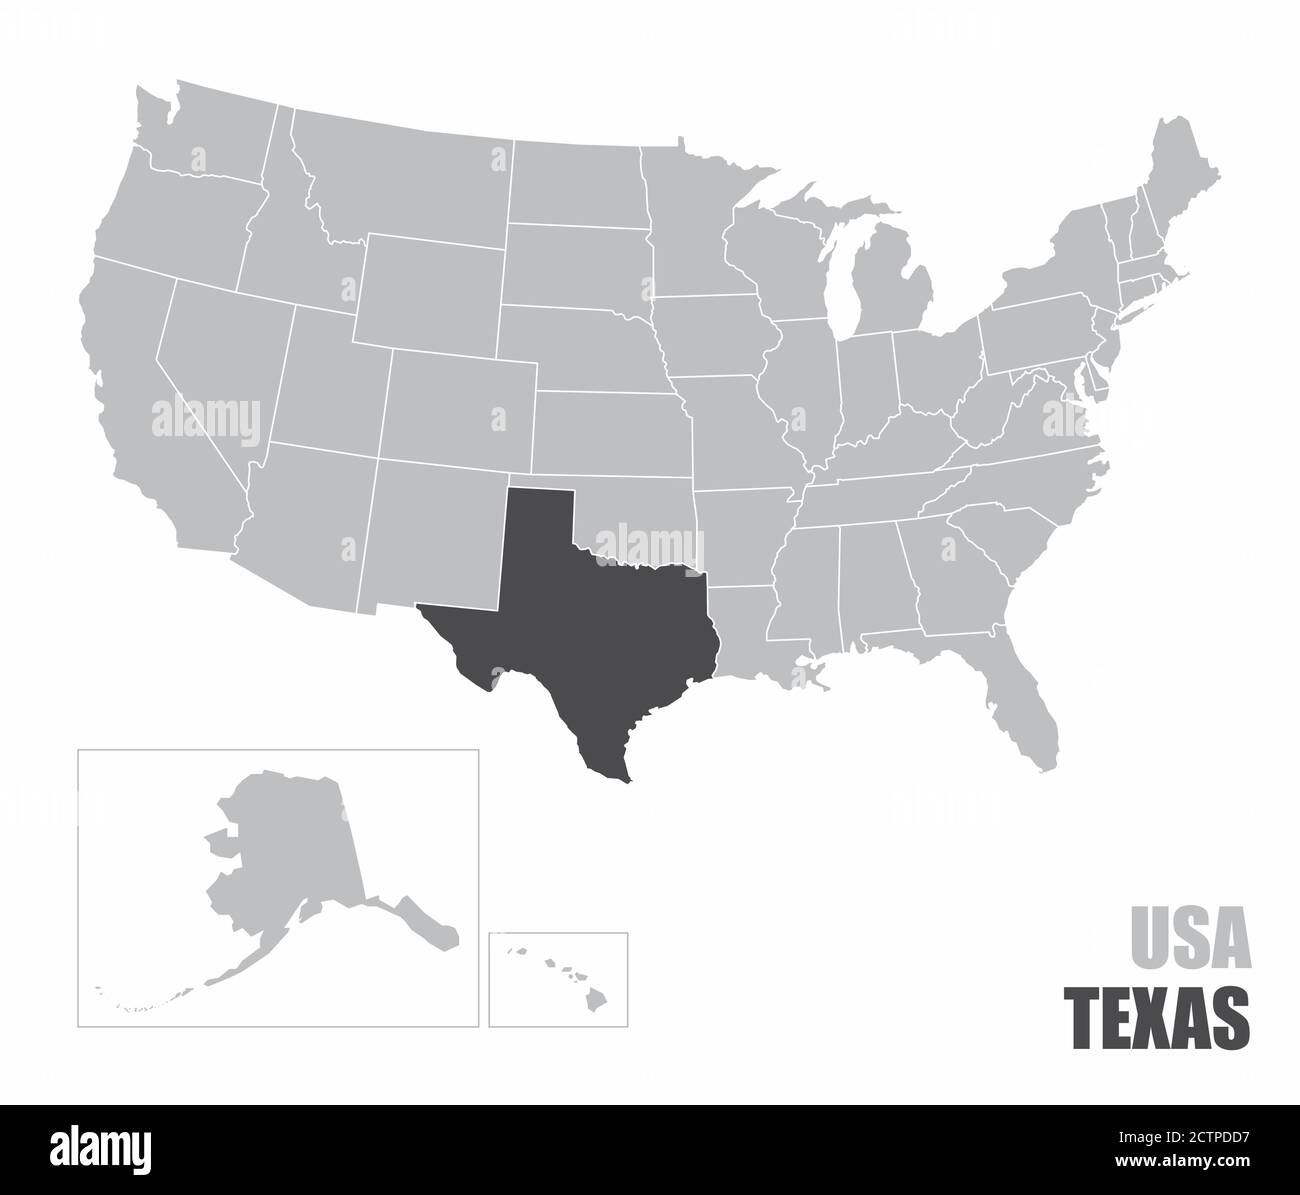 USA Texas map Stock Vector